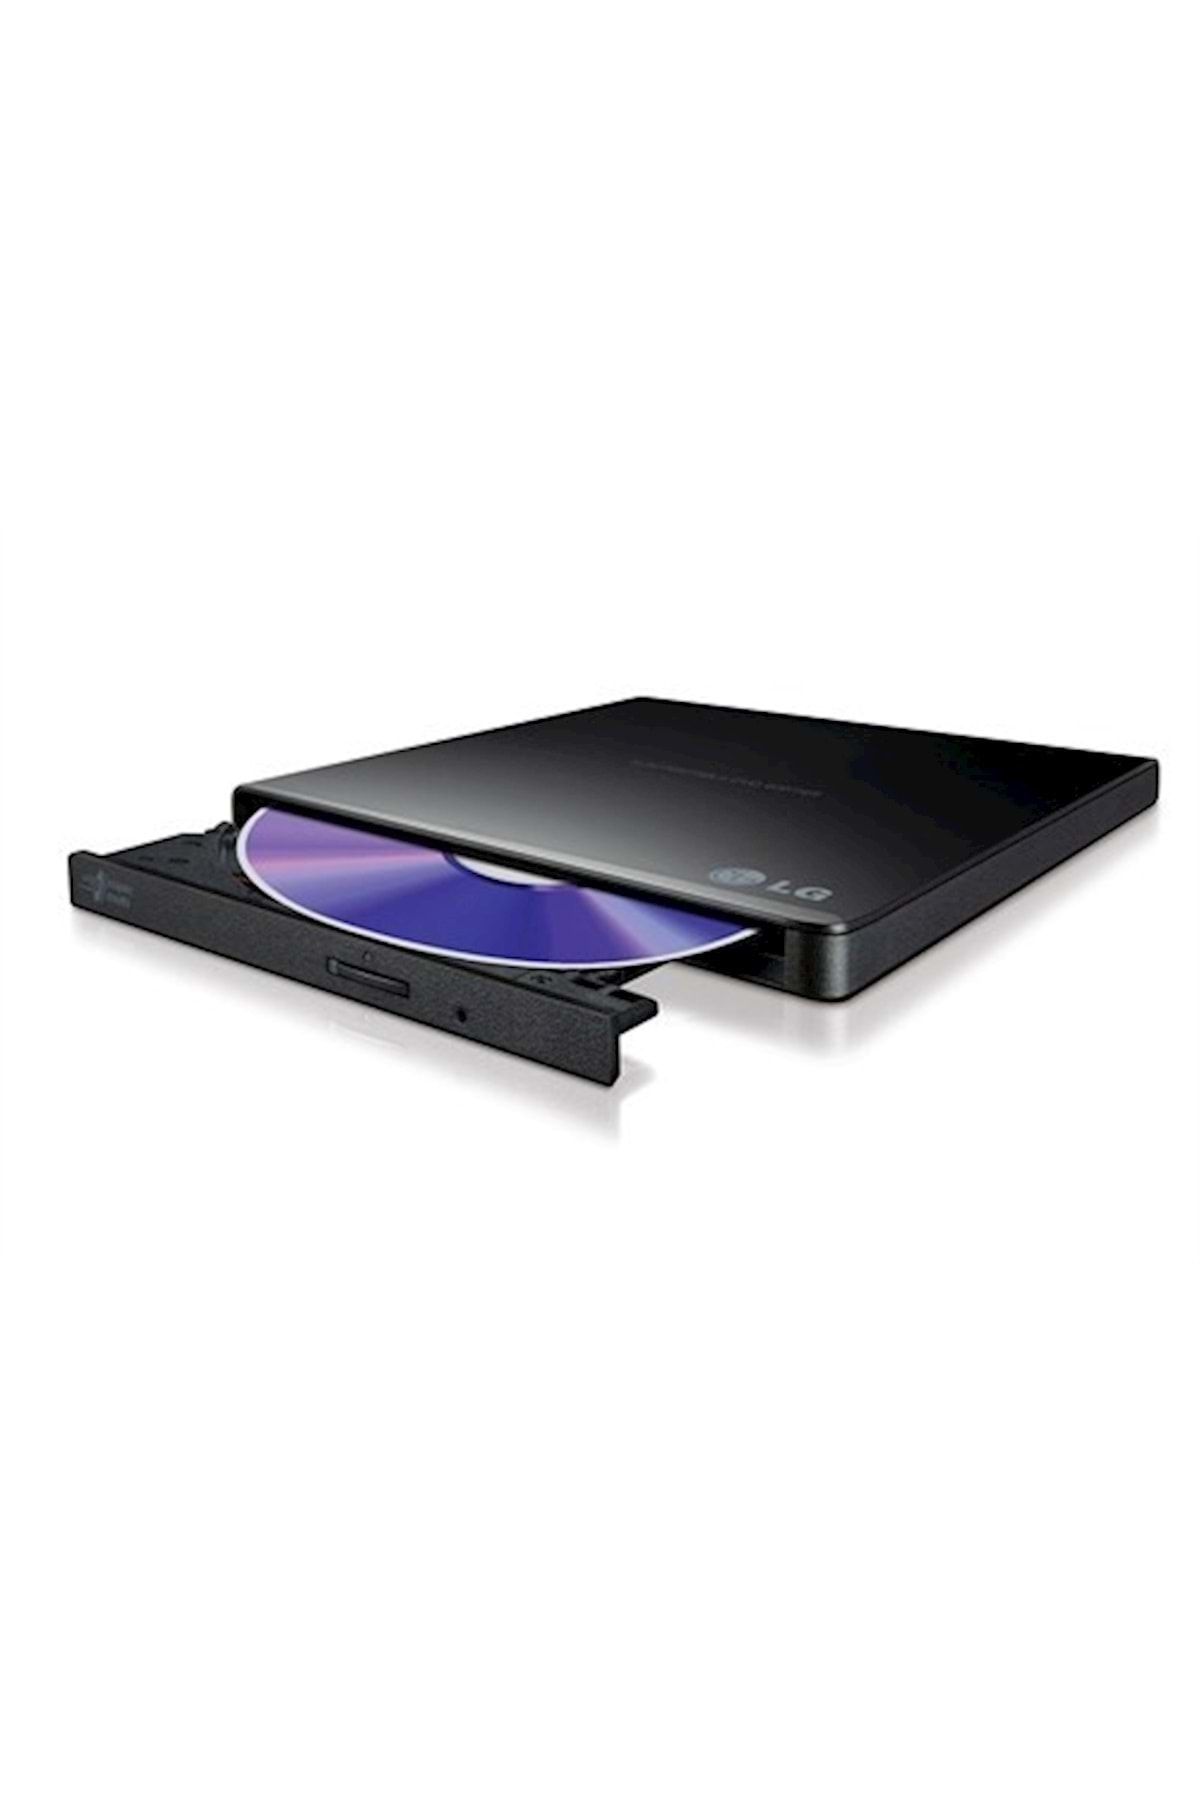 LG 24X USB2.0 Harici Slim Siyah DVD-RW (GP57EB40)